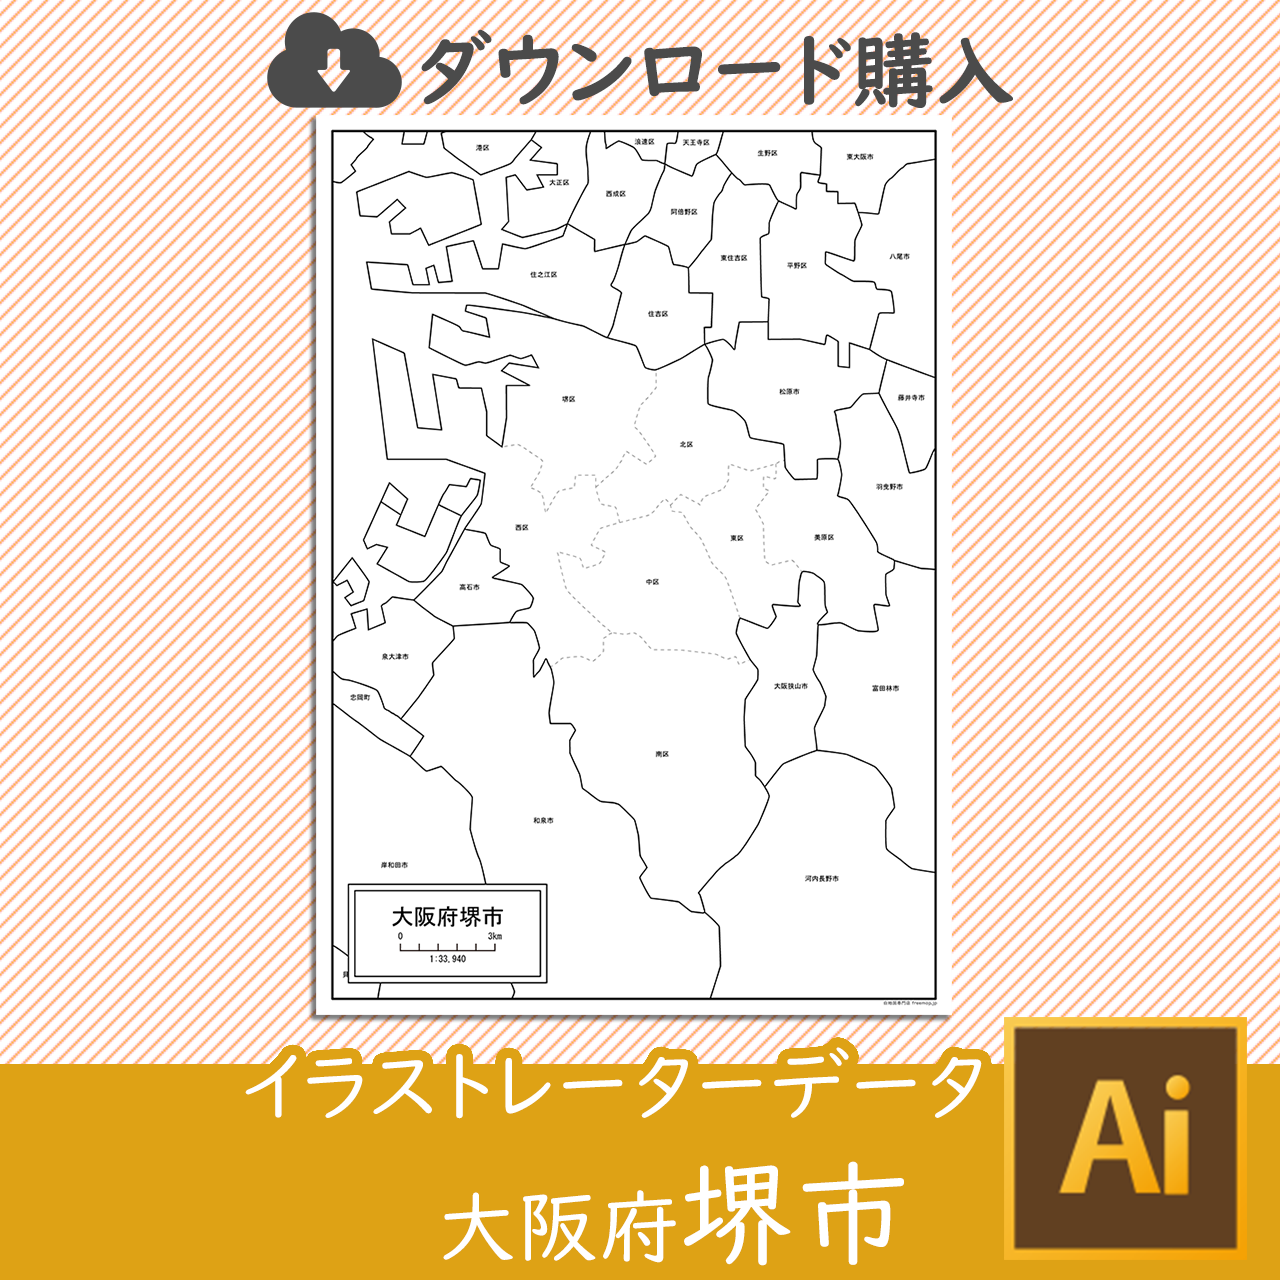 大阪府堺市のaiデータのサムネイル画像